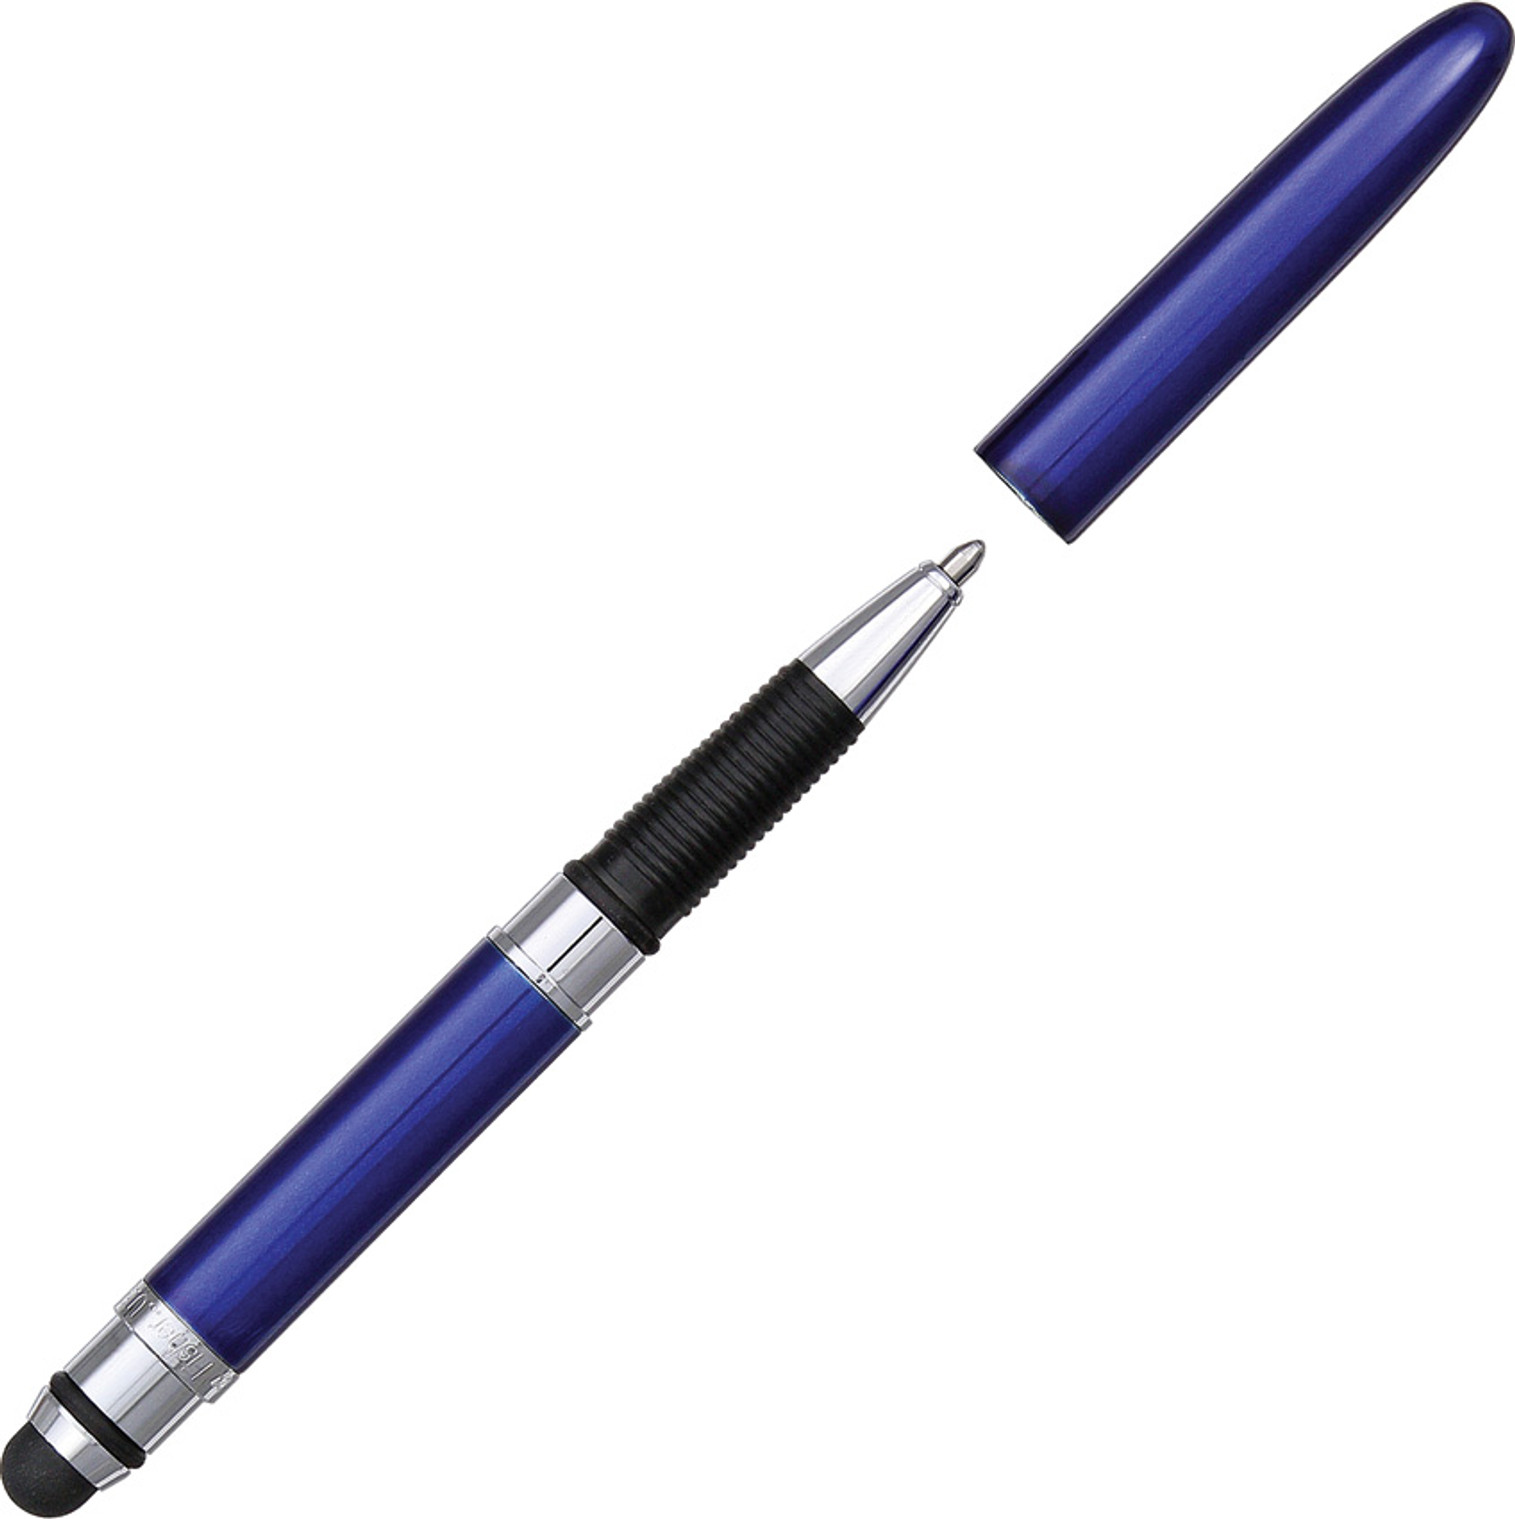 Fisher Space Pen Bullet Grip Blue Body w/ Stylus